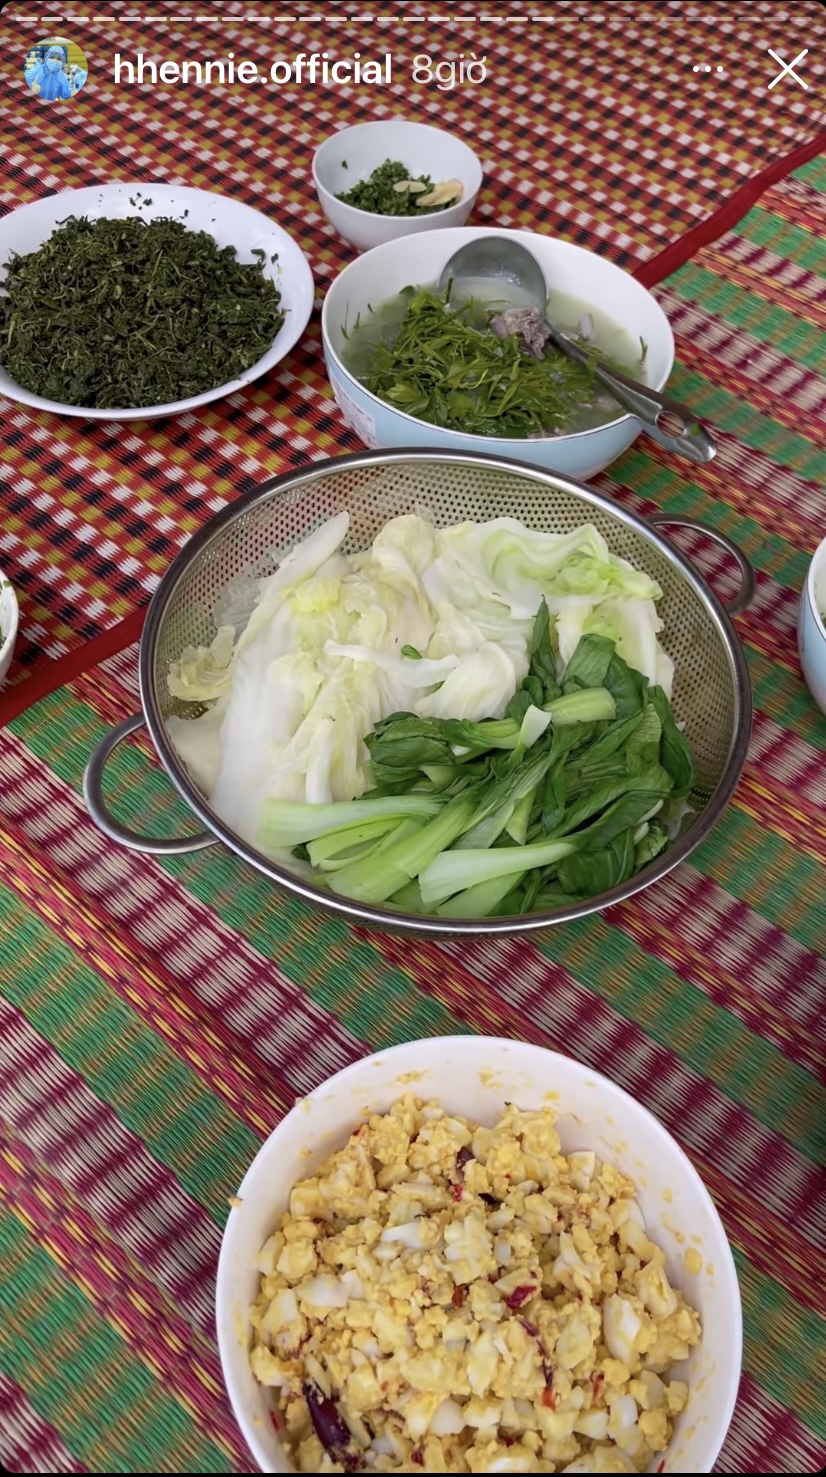 Mâm cơm đơn giản với món tủ trứng trộn nước mắm chấm rau luộc nhưng cũng đủ để H'Hen Niê ăn ngon miệng.